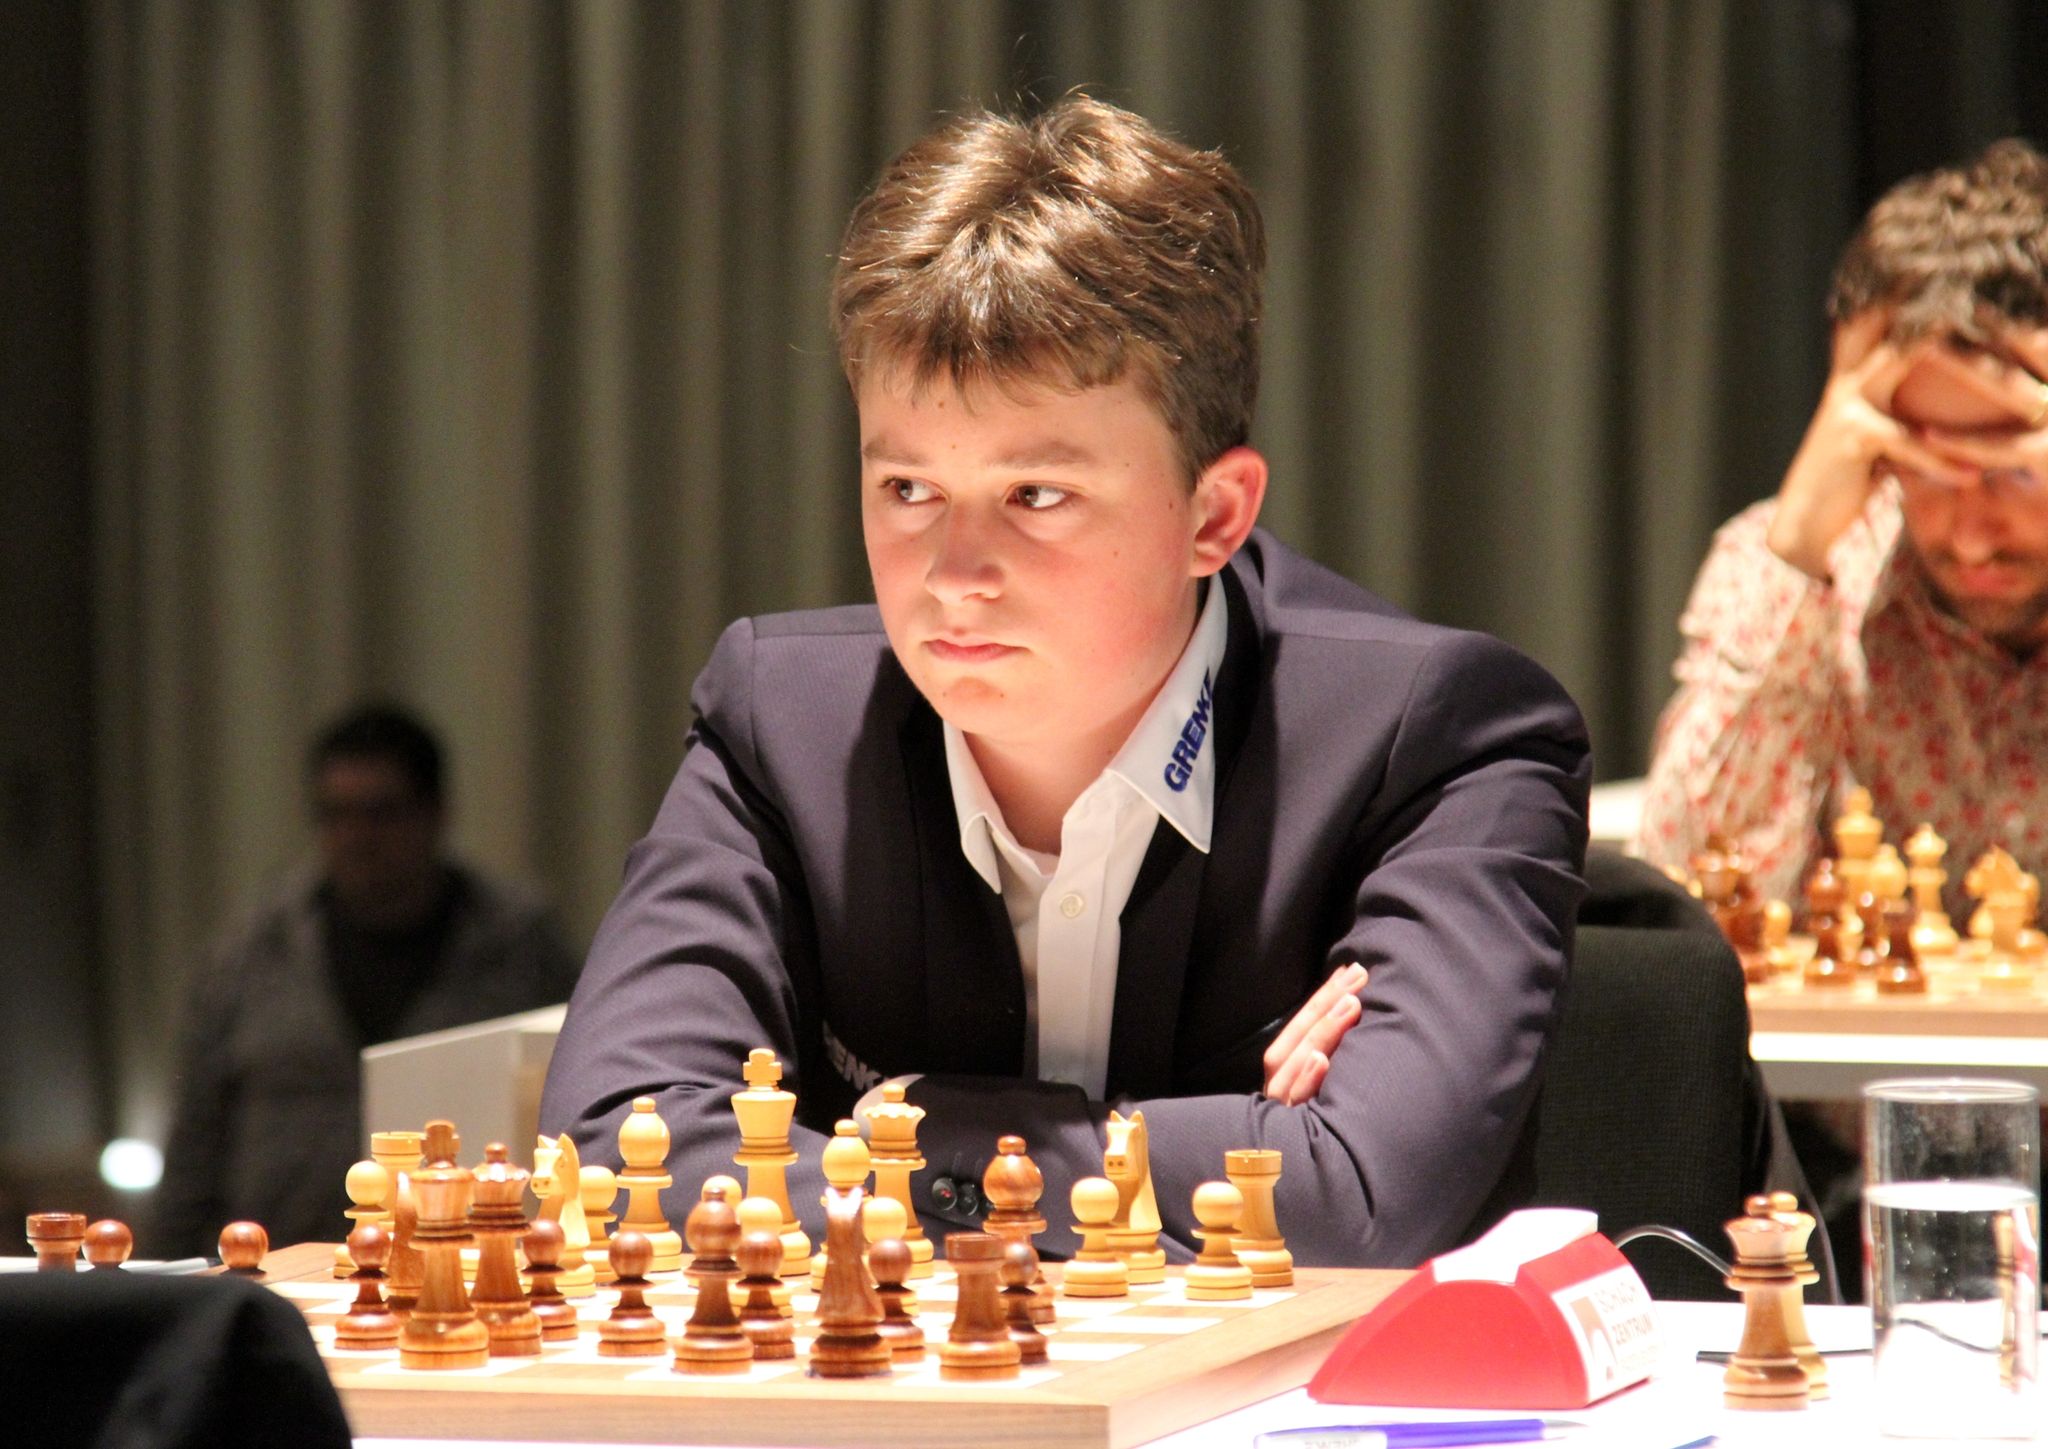 Schachspieler Vincent Keymer, hier bei einem Turnier 2019, holte bei der Vorausscheidung zur Schach-WM in elf Runden sieben Punkte.